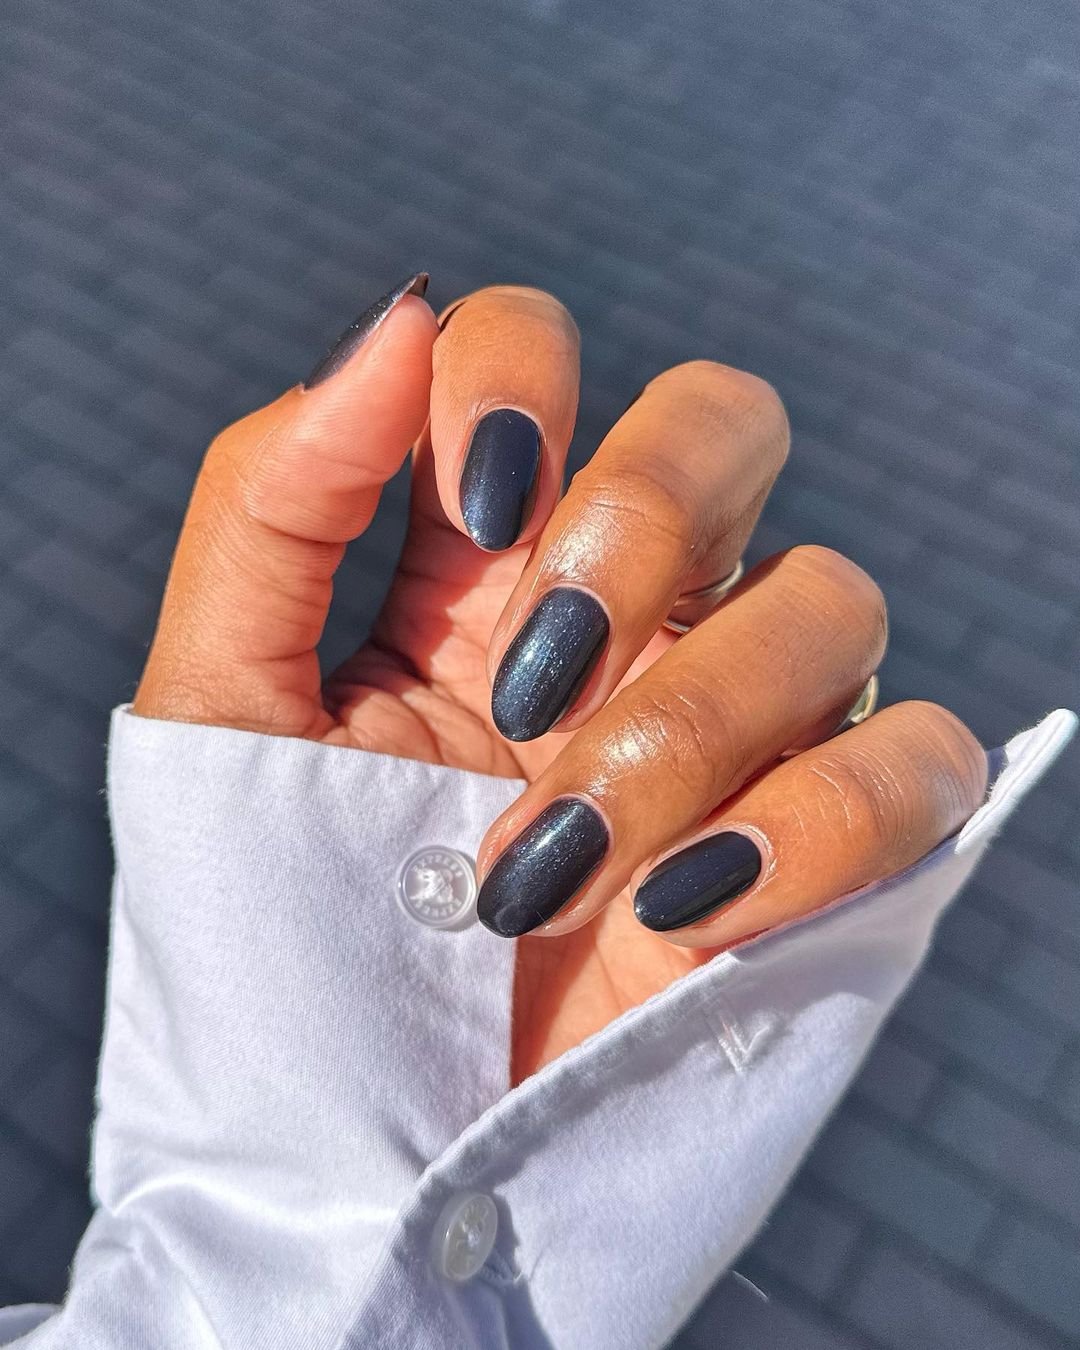 @lolo.nailedit - unha-manicure-esmalte - esmalte cinza - inverno - brasil - https://stealthelook.com.br